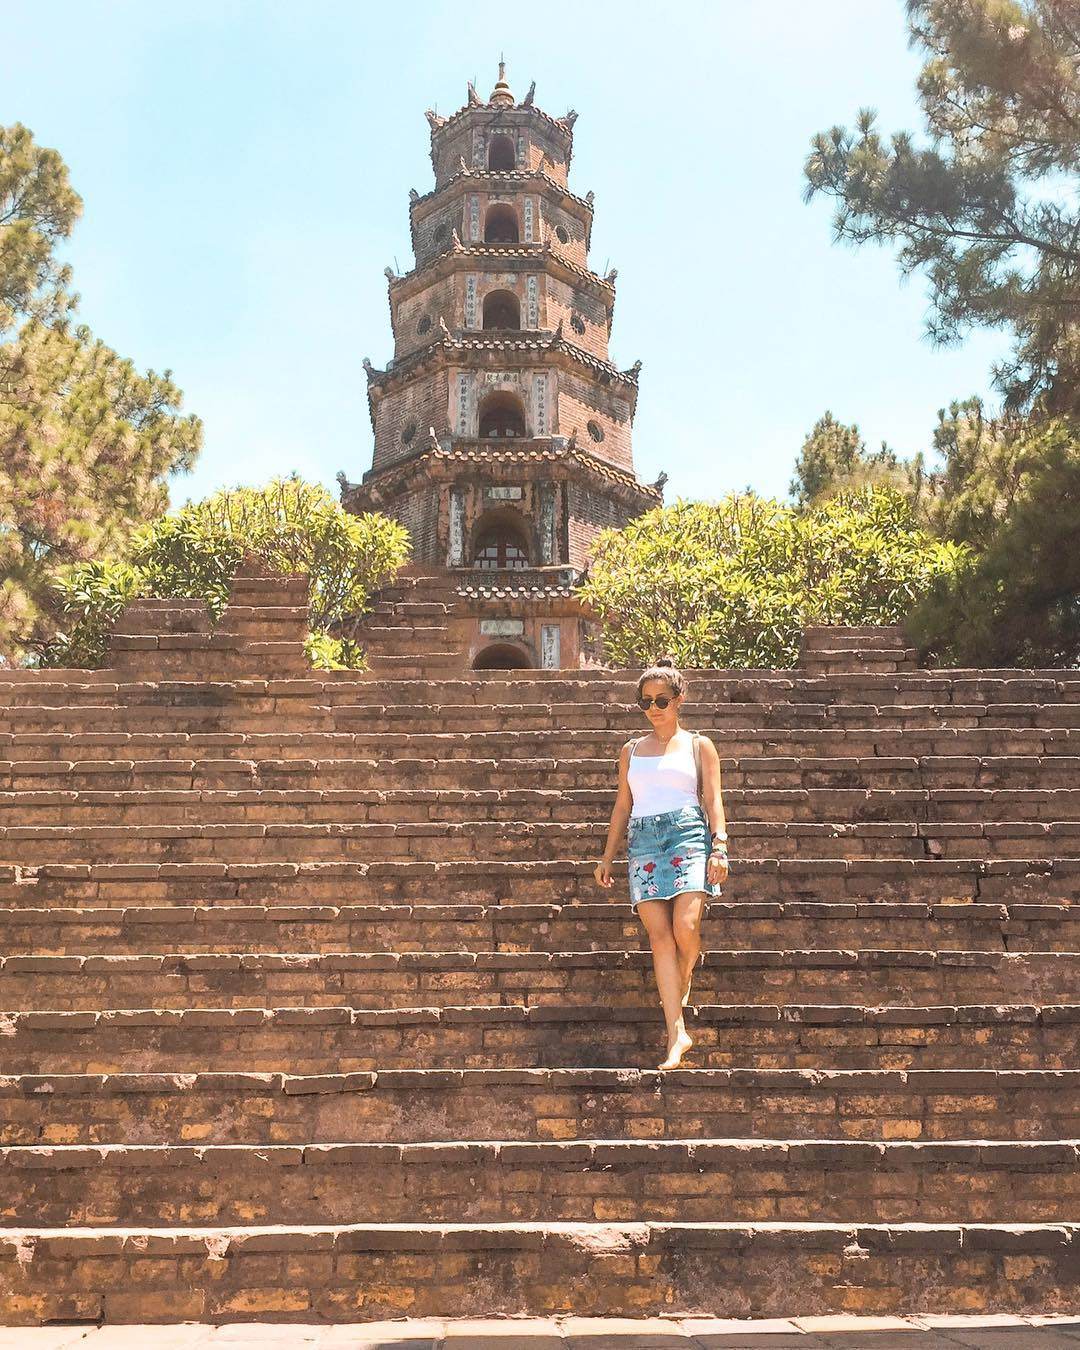 Từ xa, bạn dễ dàng nhận ra chùa Thiên Mụ bởi tháp Phước Duyên cao chất ngất